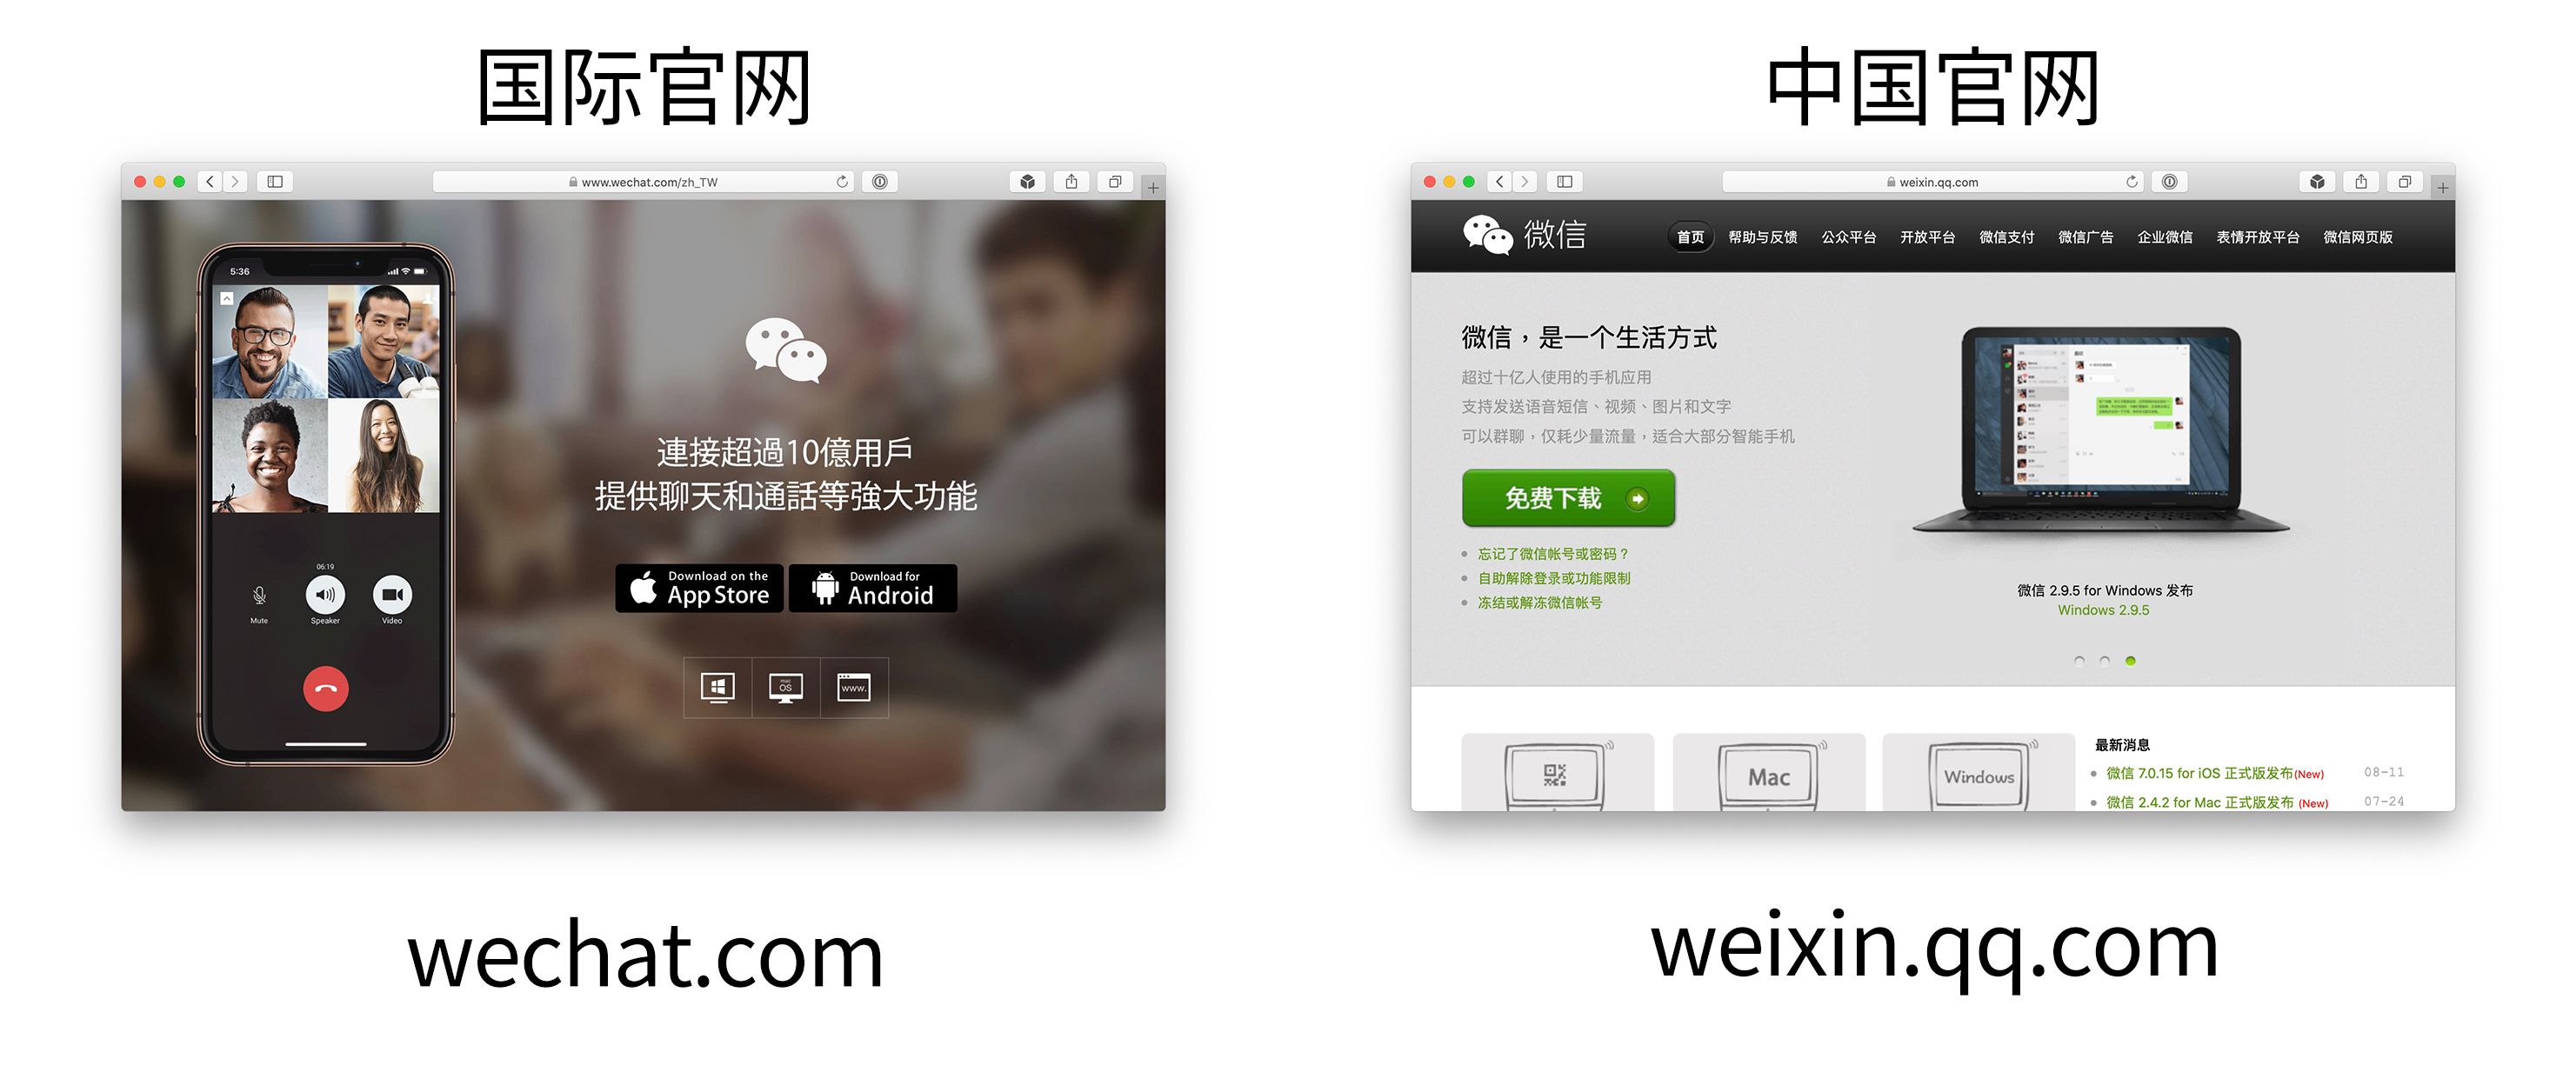 腾讯强调WeChat与微信的区别